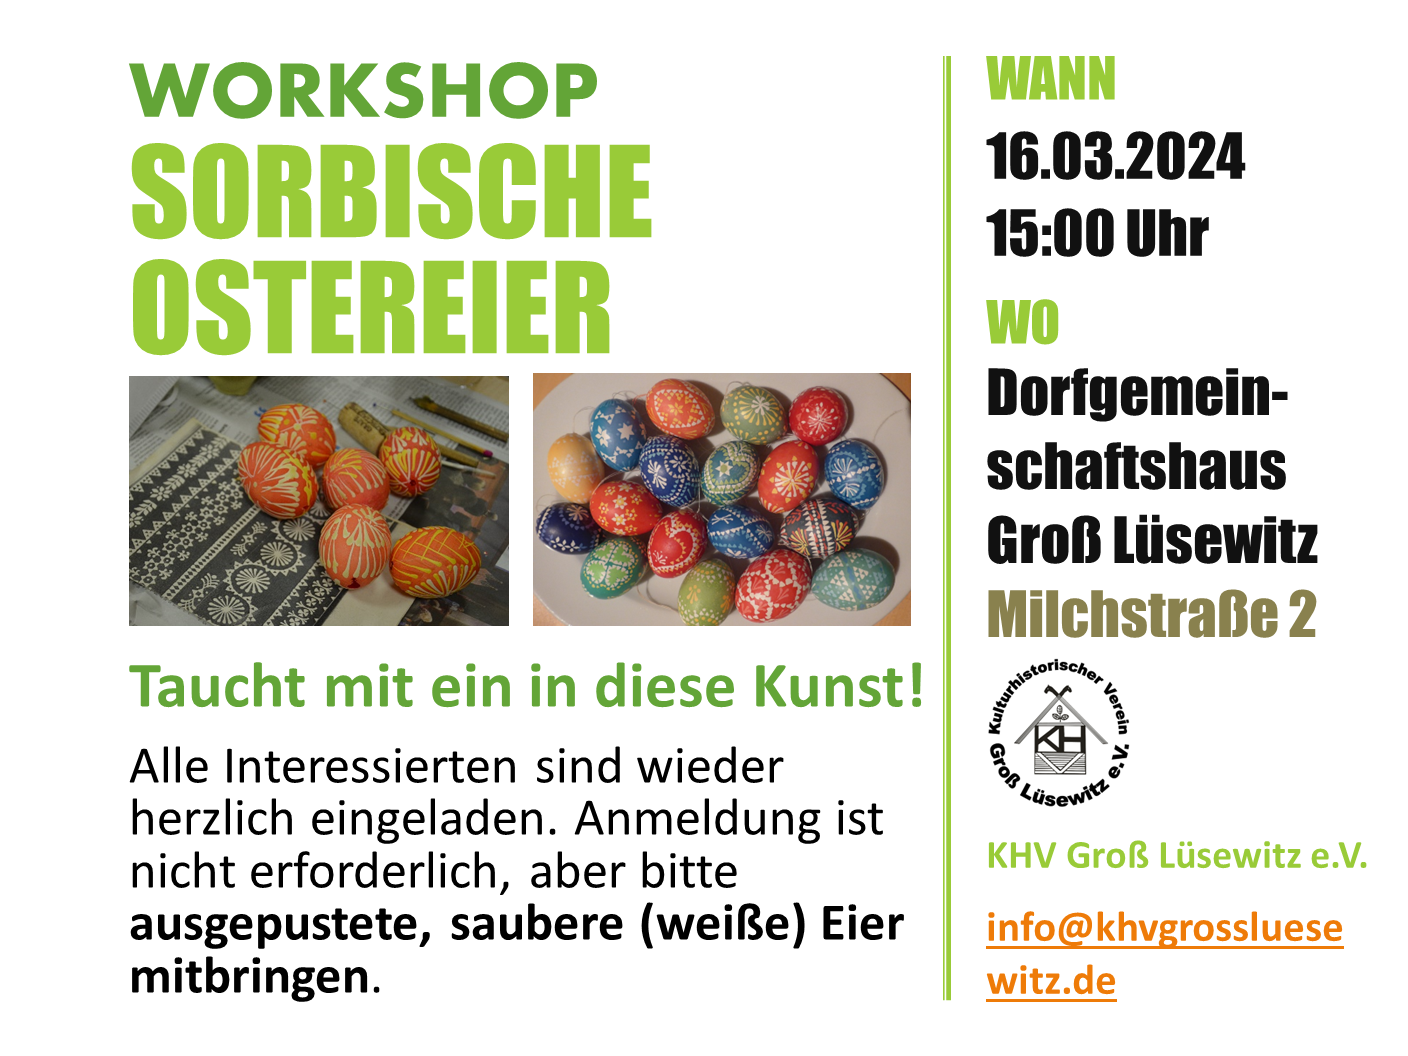 Workshop "Sorbische Ostereier" Wann: 16.03.2024 um 15:00 Uhr Wo: DGH Groß Lüsewitz Anmeldung ist nicht erforderlich, aber bitte ausgepustete, saubere (weiße) Eier mitbringen